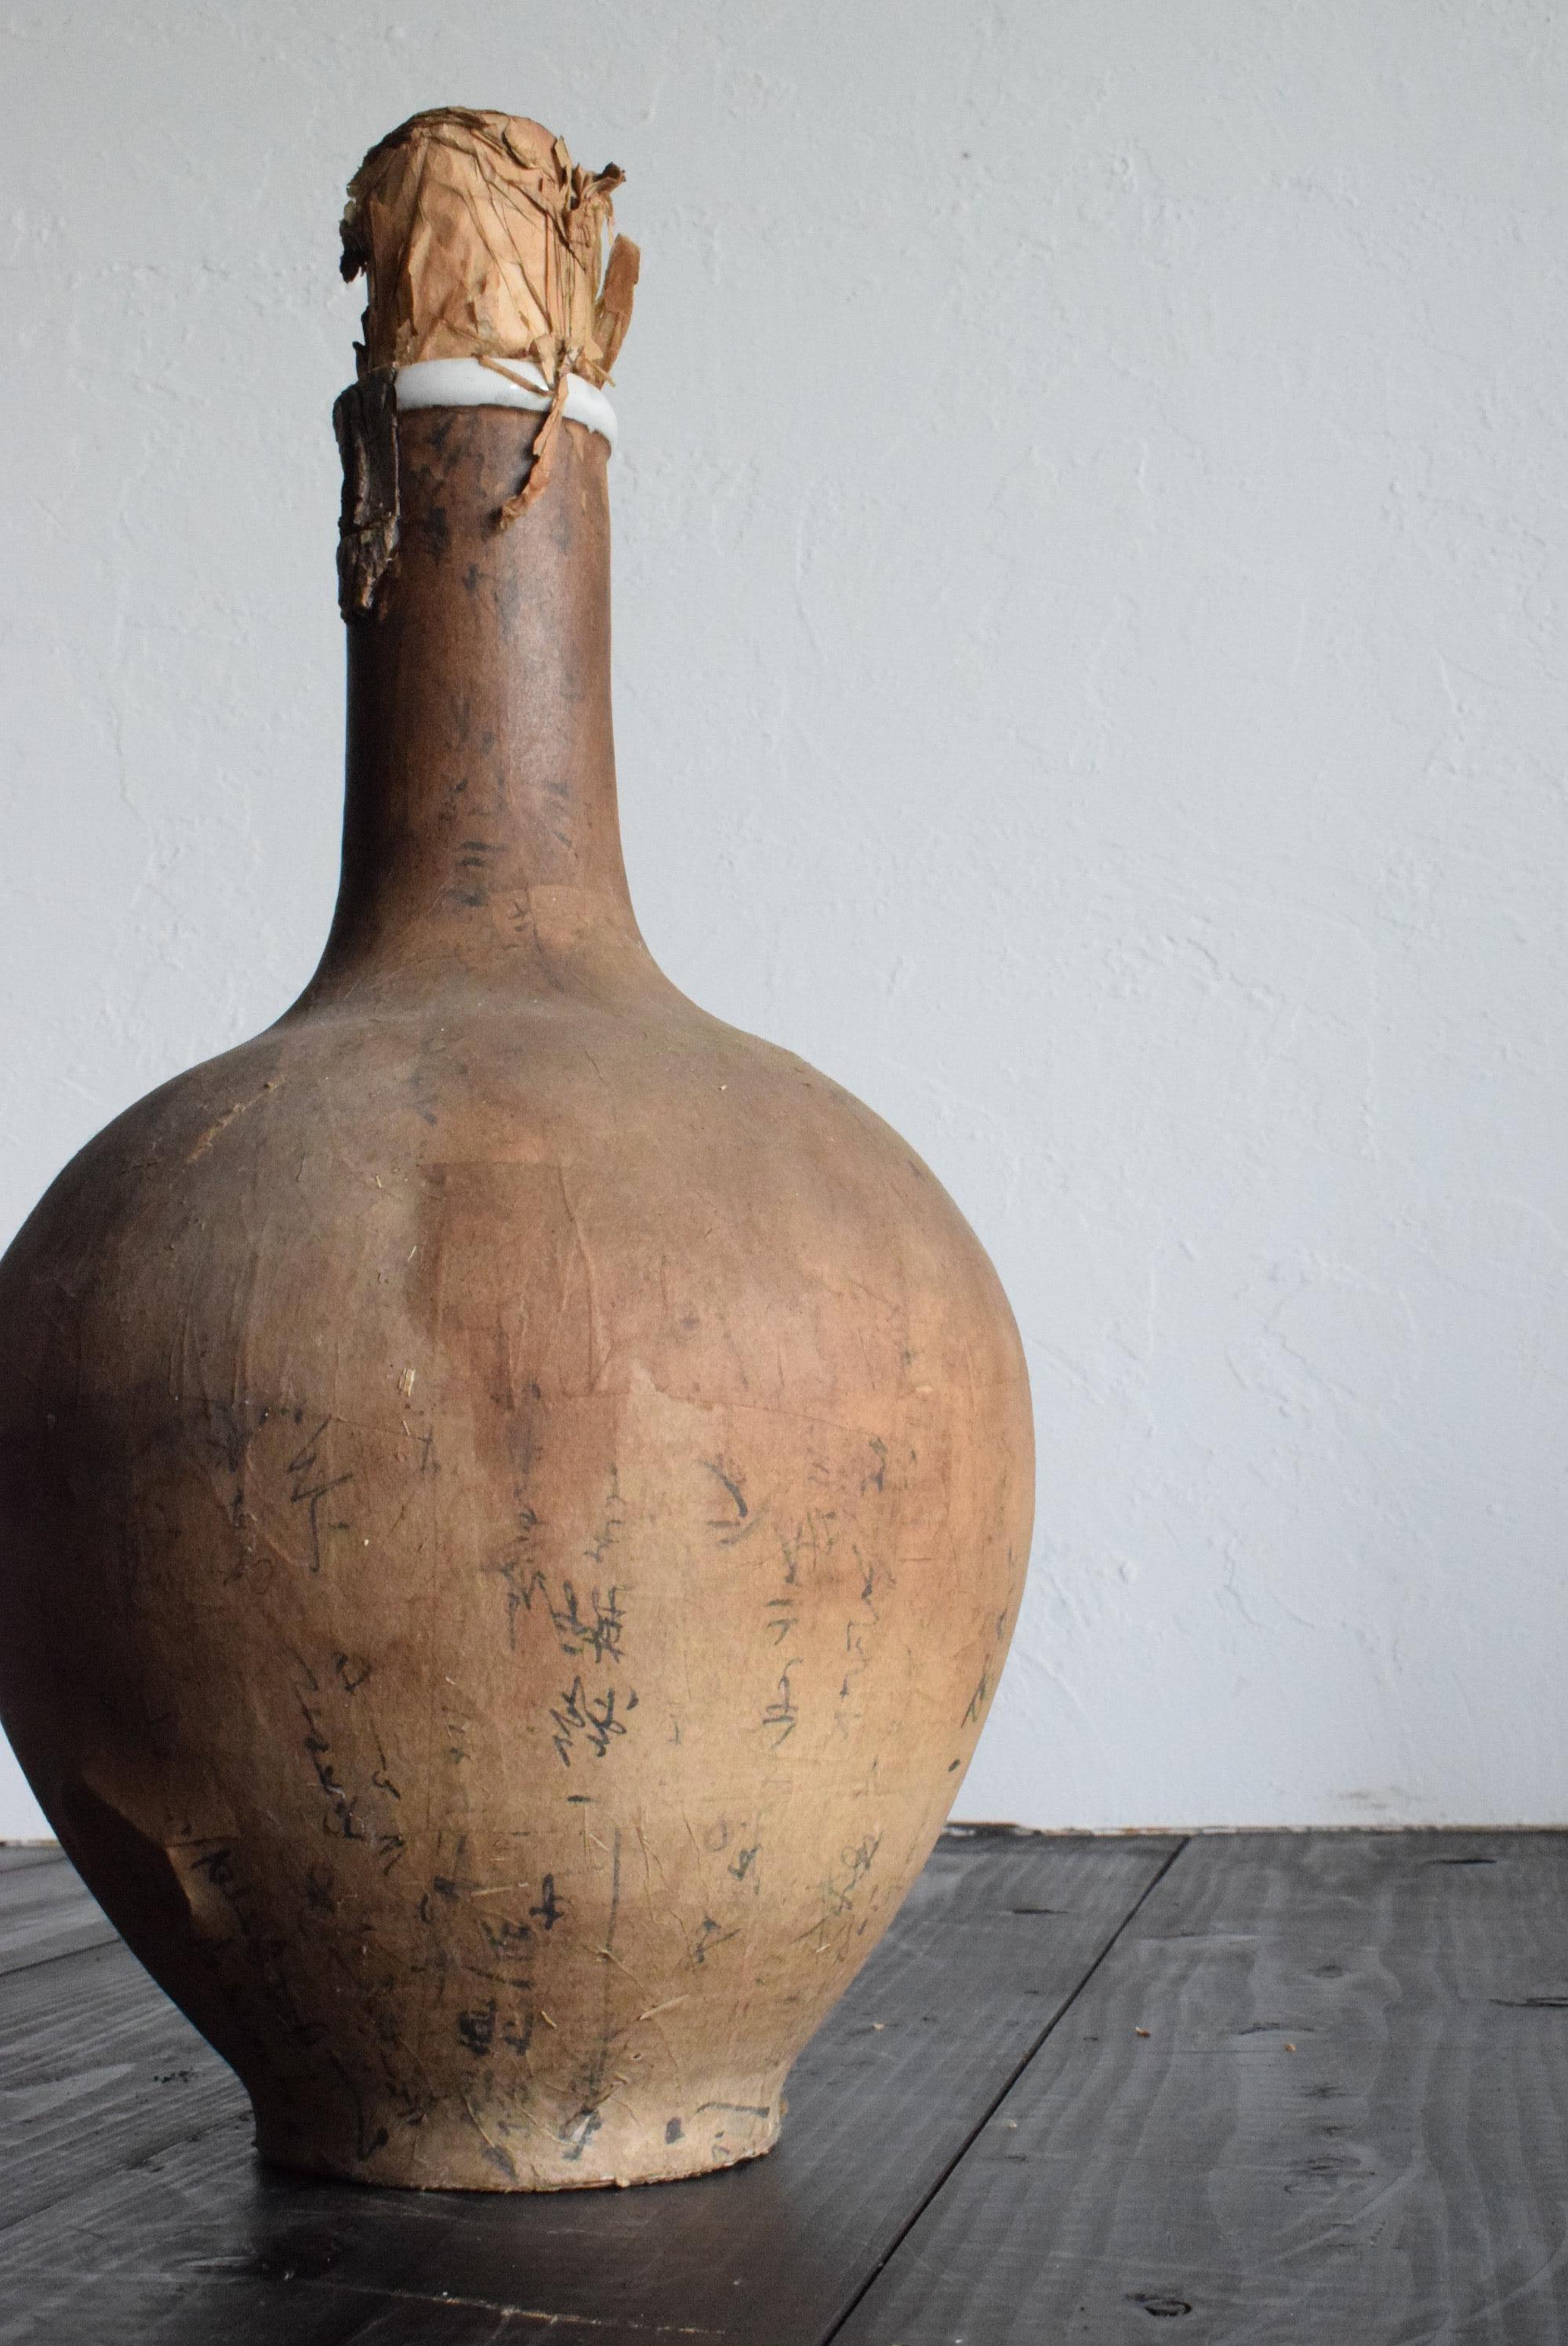 Il s'agit d'une ancienne bouteille de saké japonais. Il date de la période Meiji (1860-1900). Il est fabriqué en céramique et recouvert de papier. Il est légèrement fissuré et renforcé par du papier. Le papier se décolle par endroits, ce qui lui